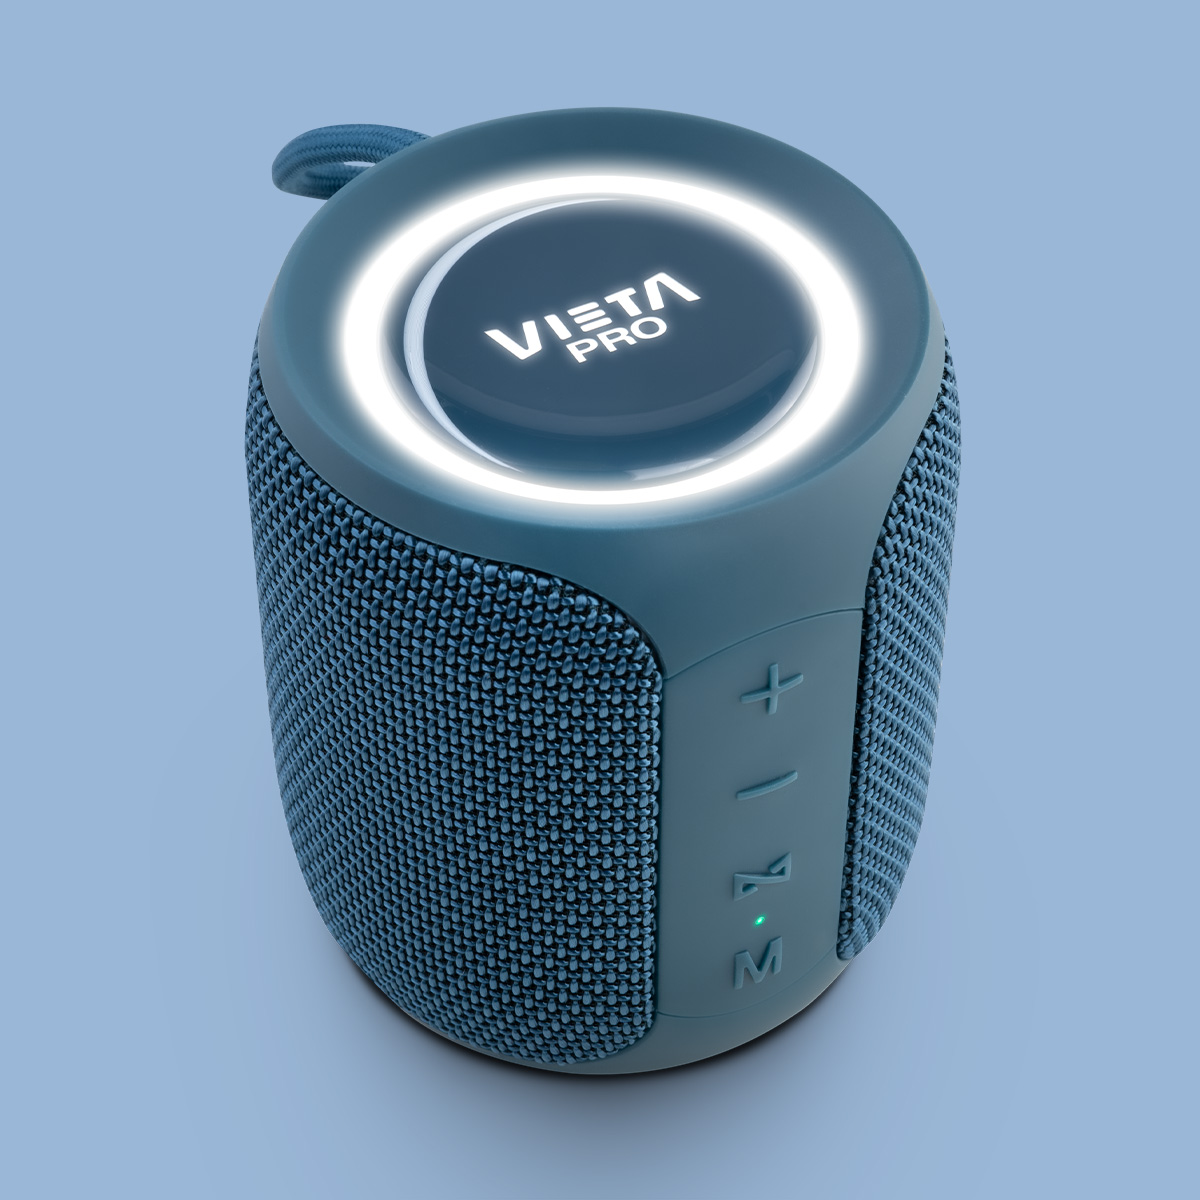 Altavoz Goody de Vieta Pro con Bluetooth 5.0, Resistente al agua IPX6, TWS,  Entrada Aux In, Radio FM, 15 horas de batería, negro